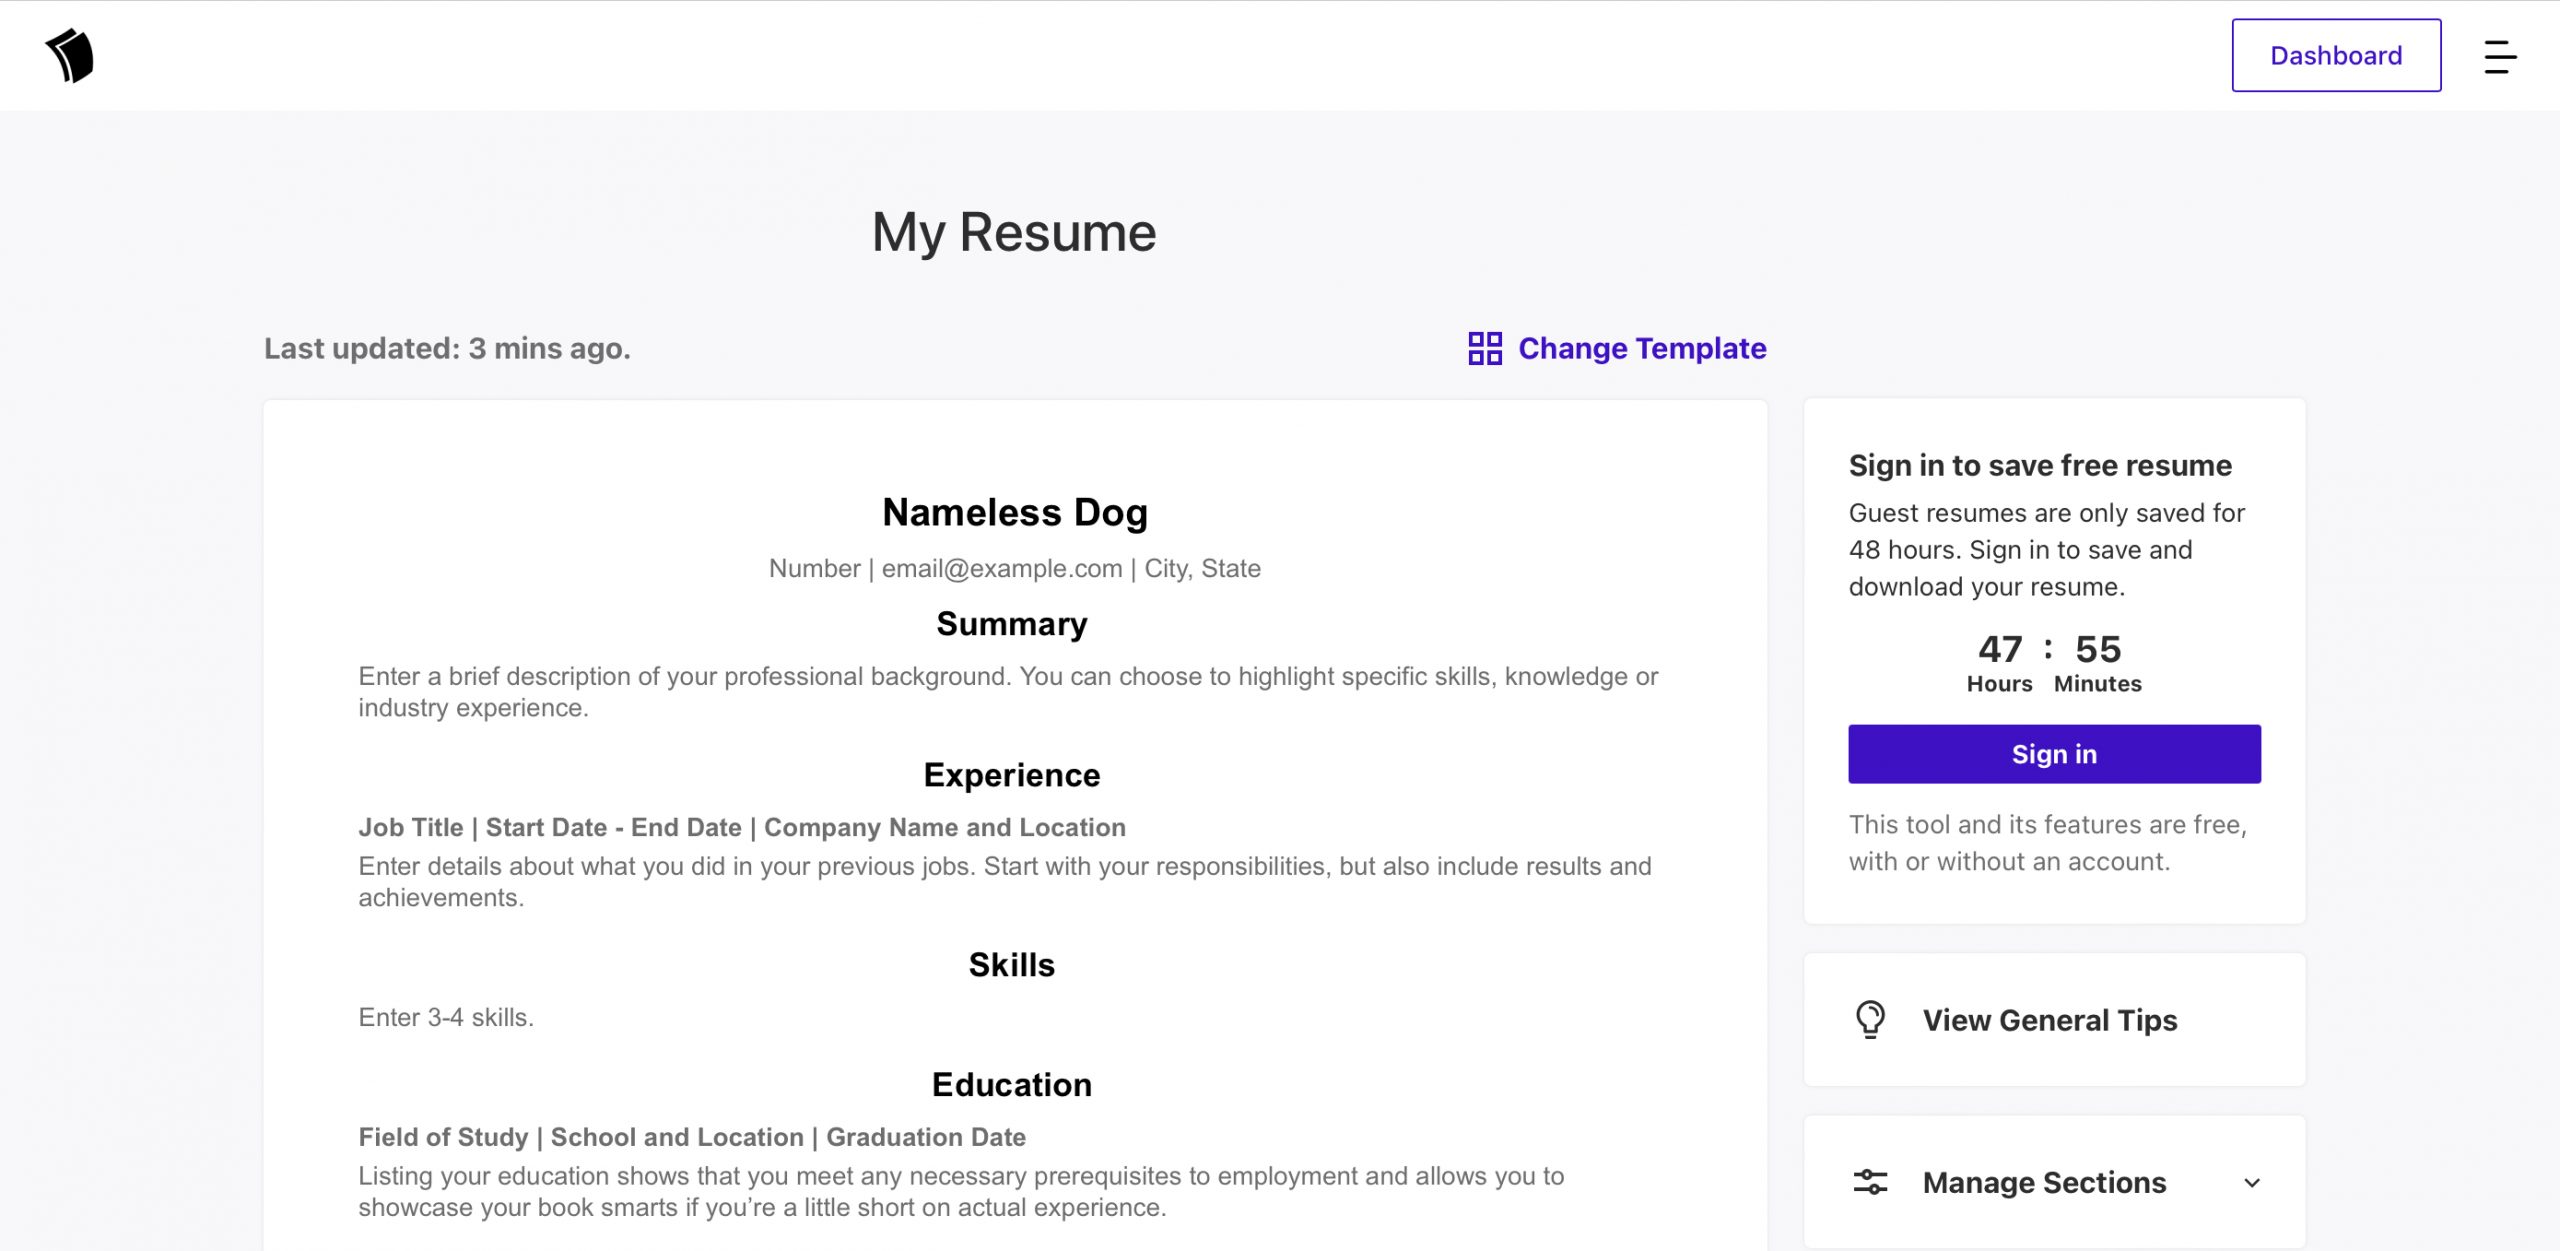 Resume.com for cv writing